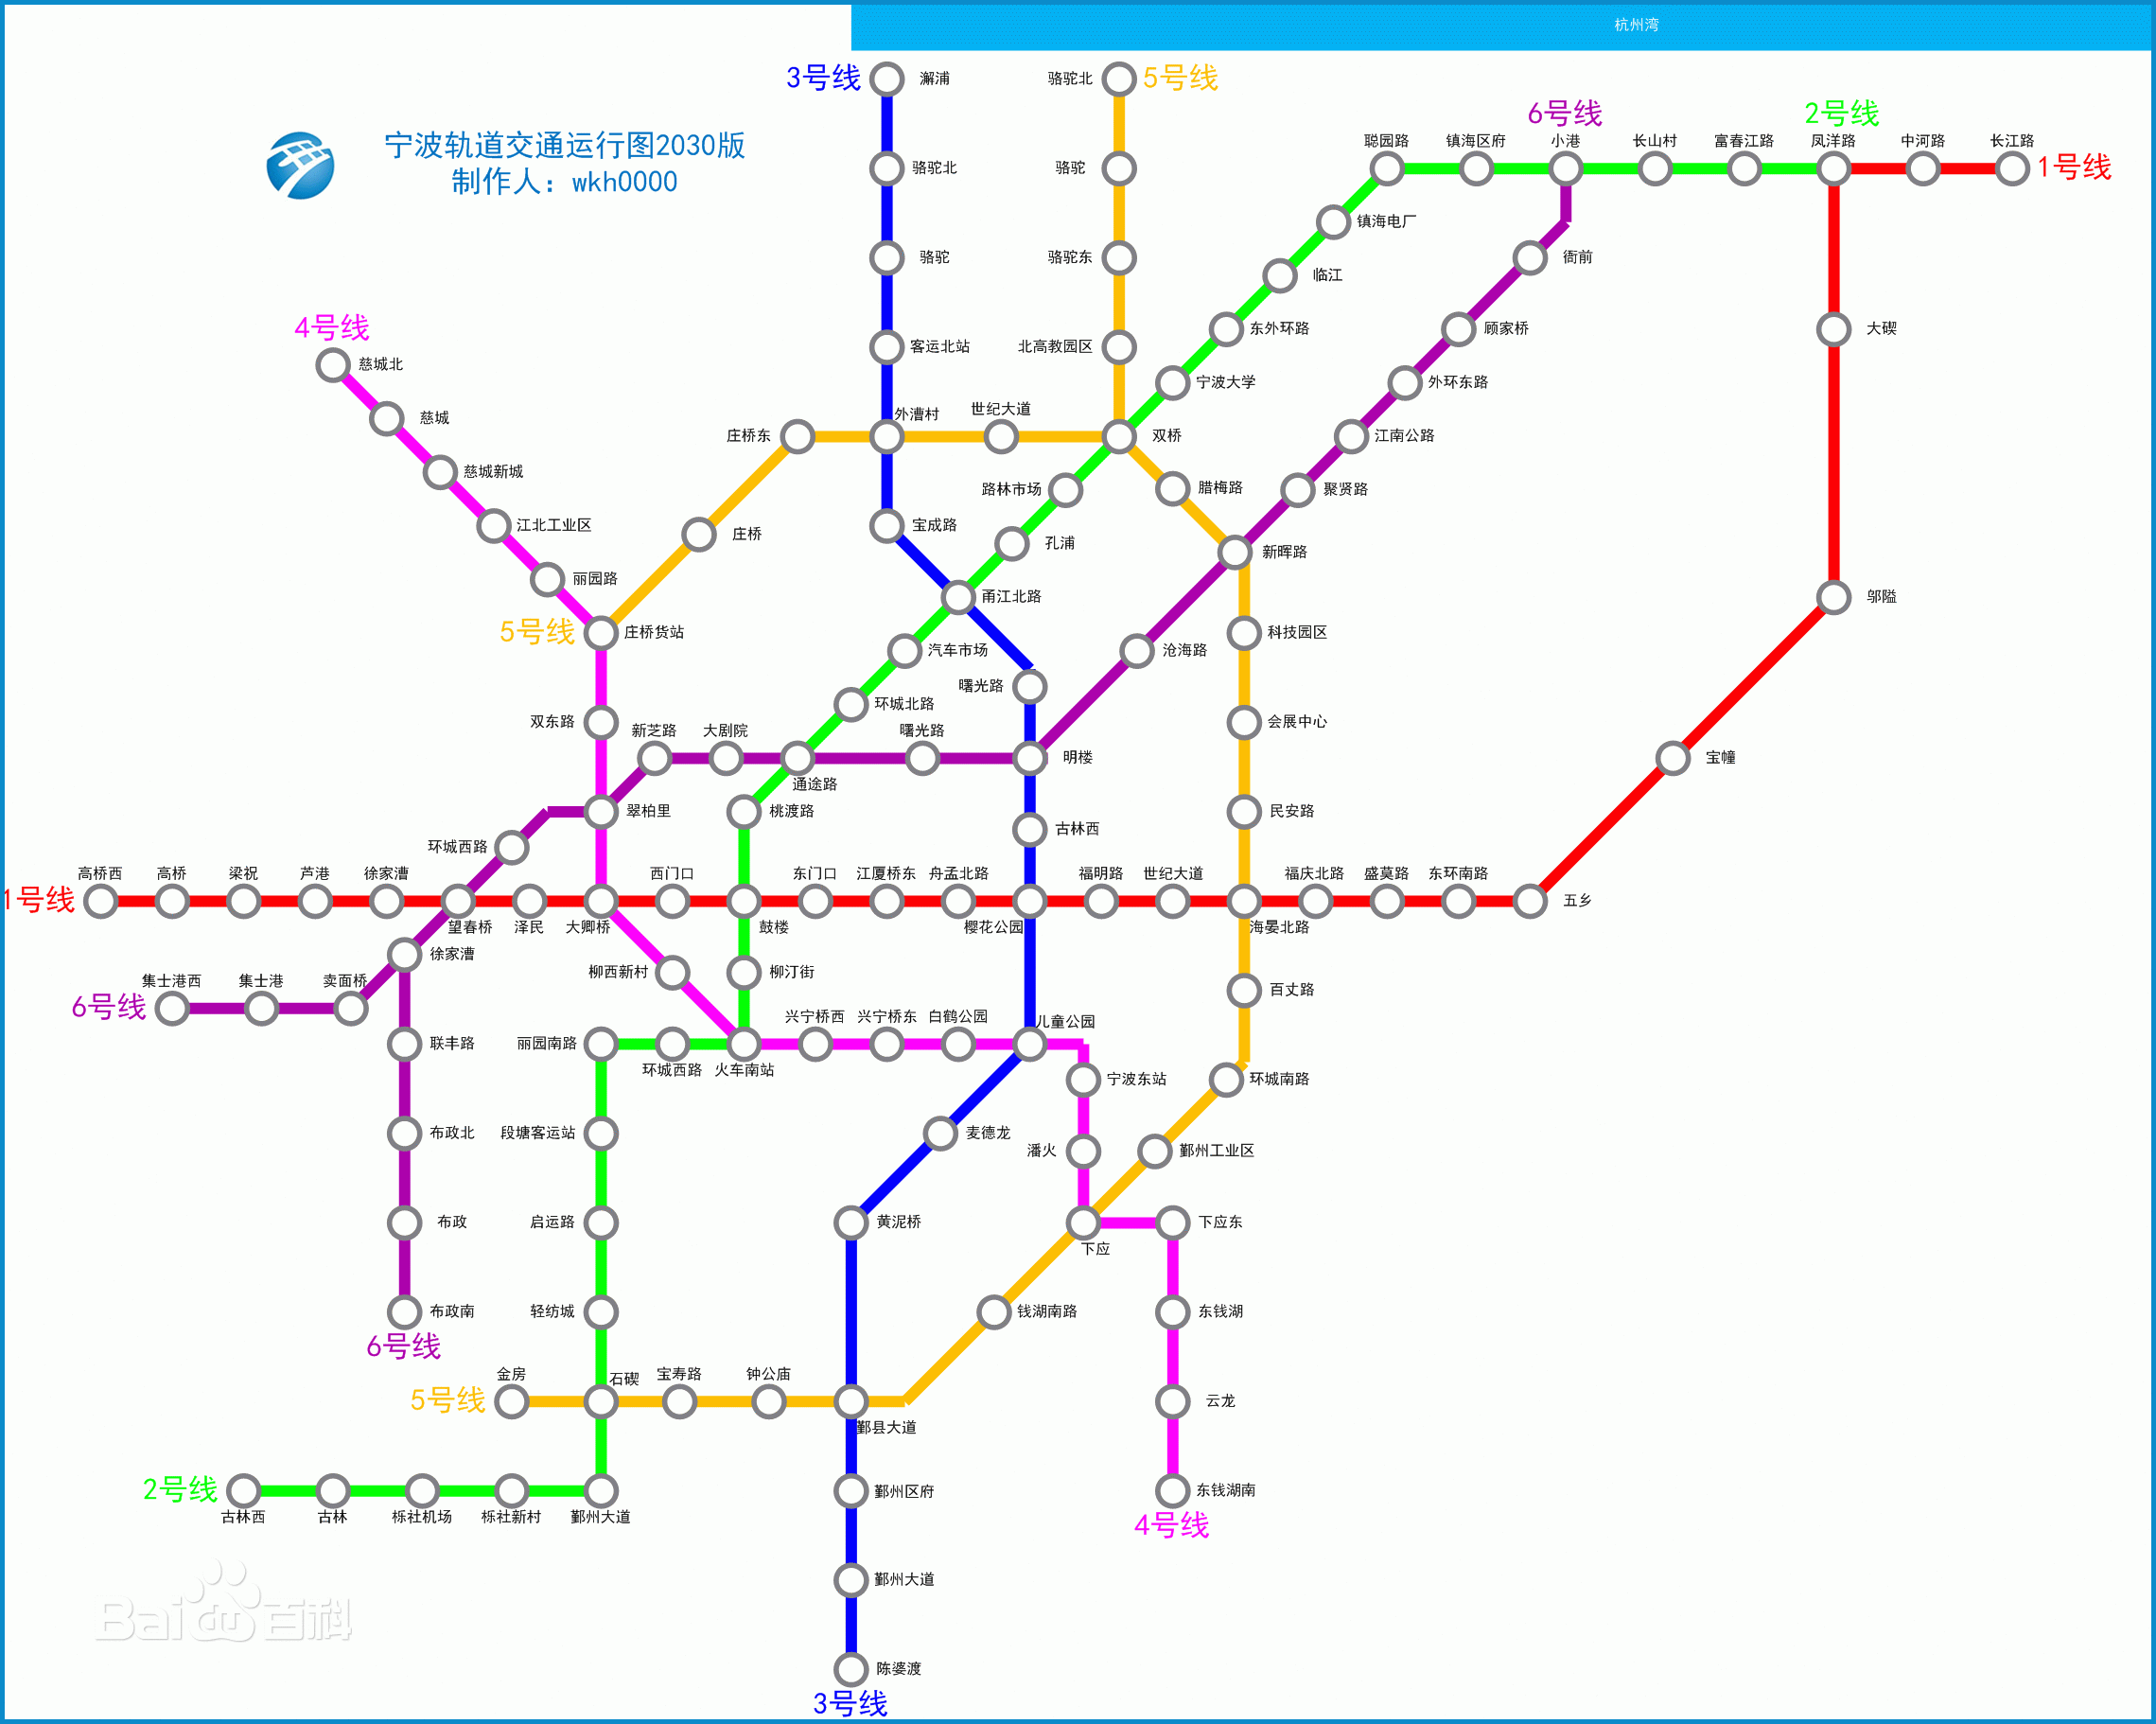 宁波轨道交通在建线路共4段,将继续扩大城市规模